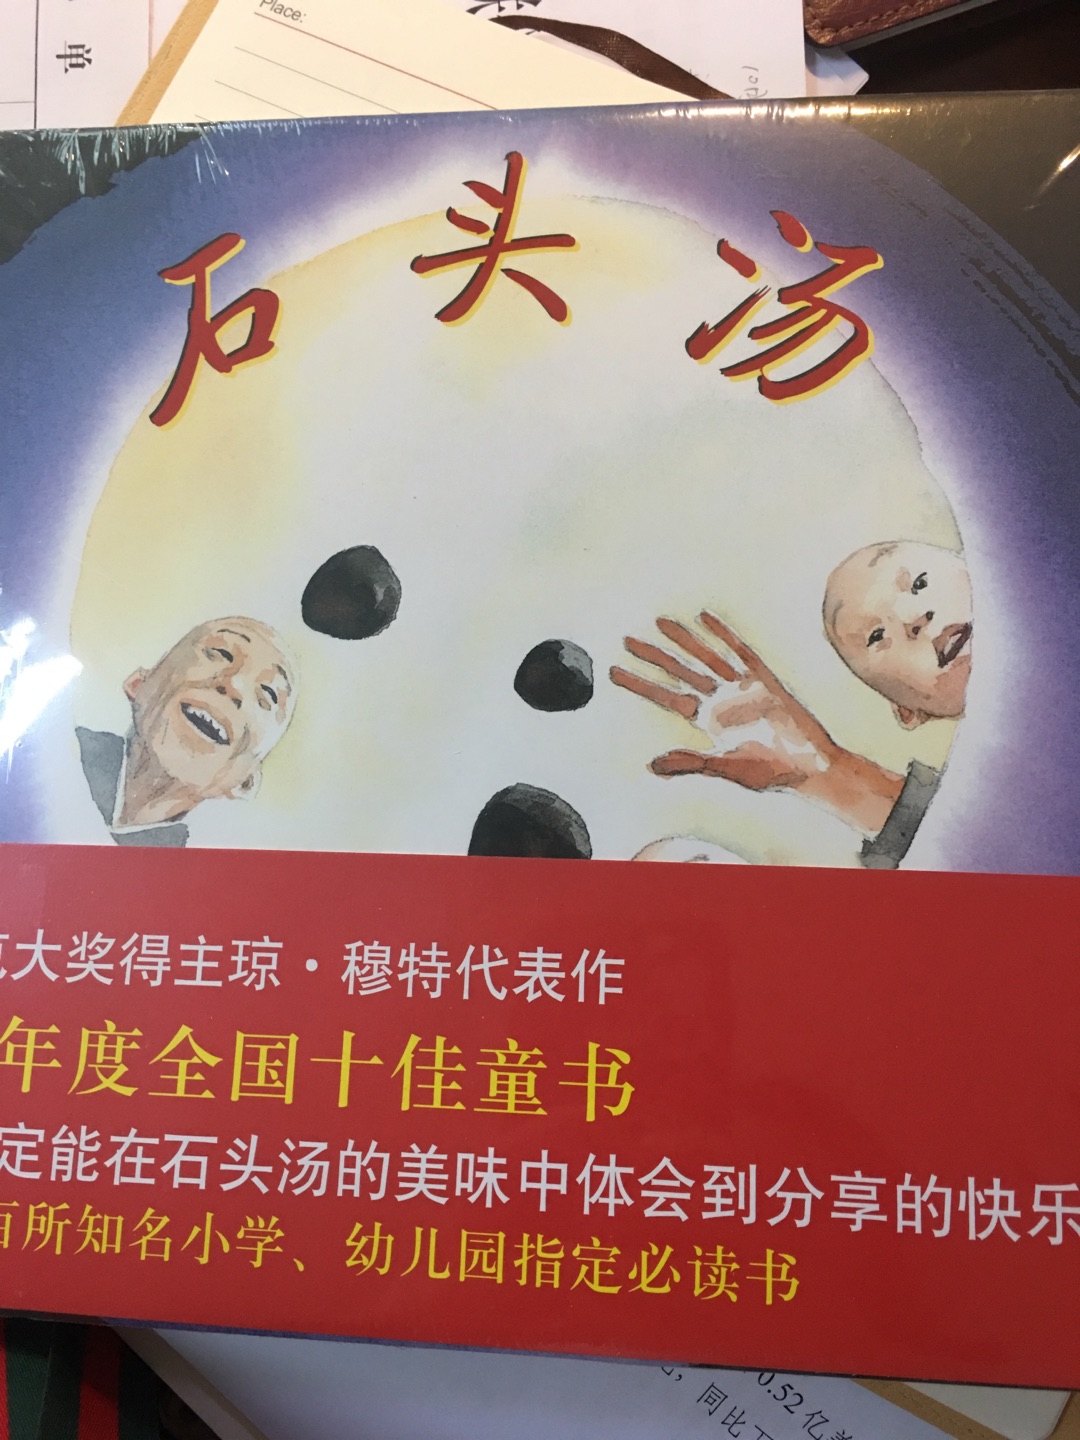 经推荐买的绘本，讲述的是中国有着禅学故事，但却是外国人画的！不过故事不错，需要细细品味。希望孩子能看的懂。